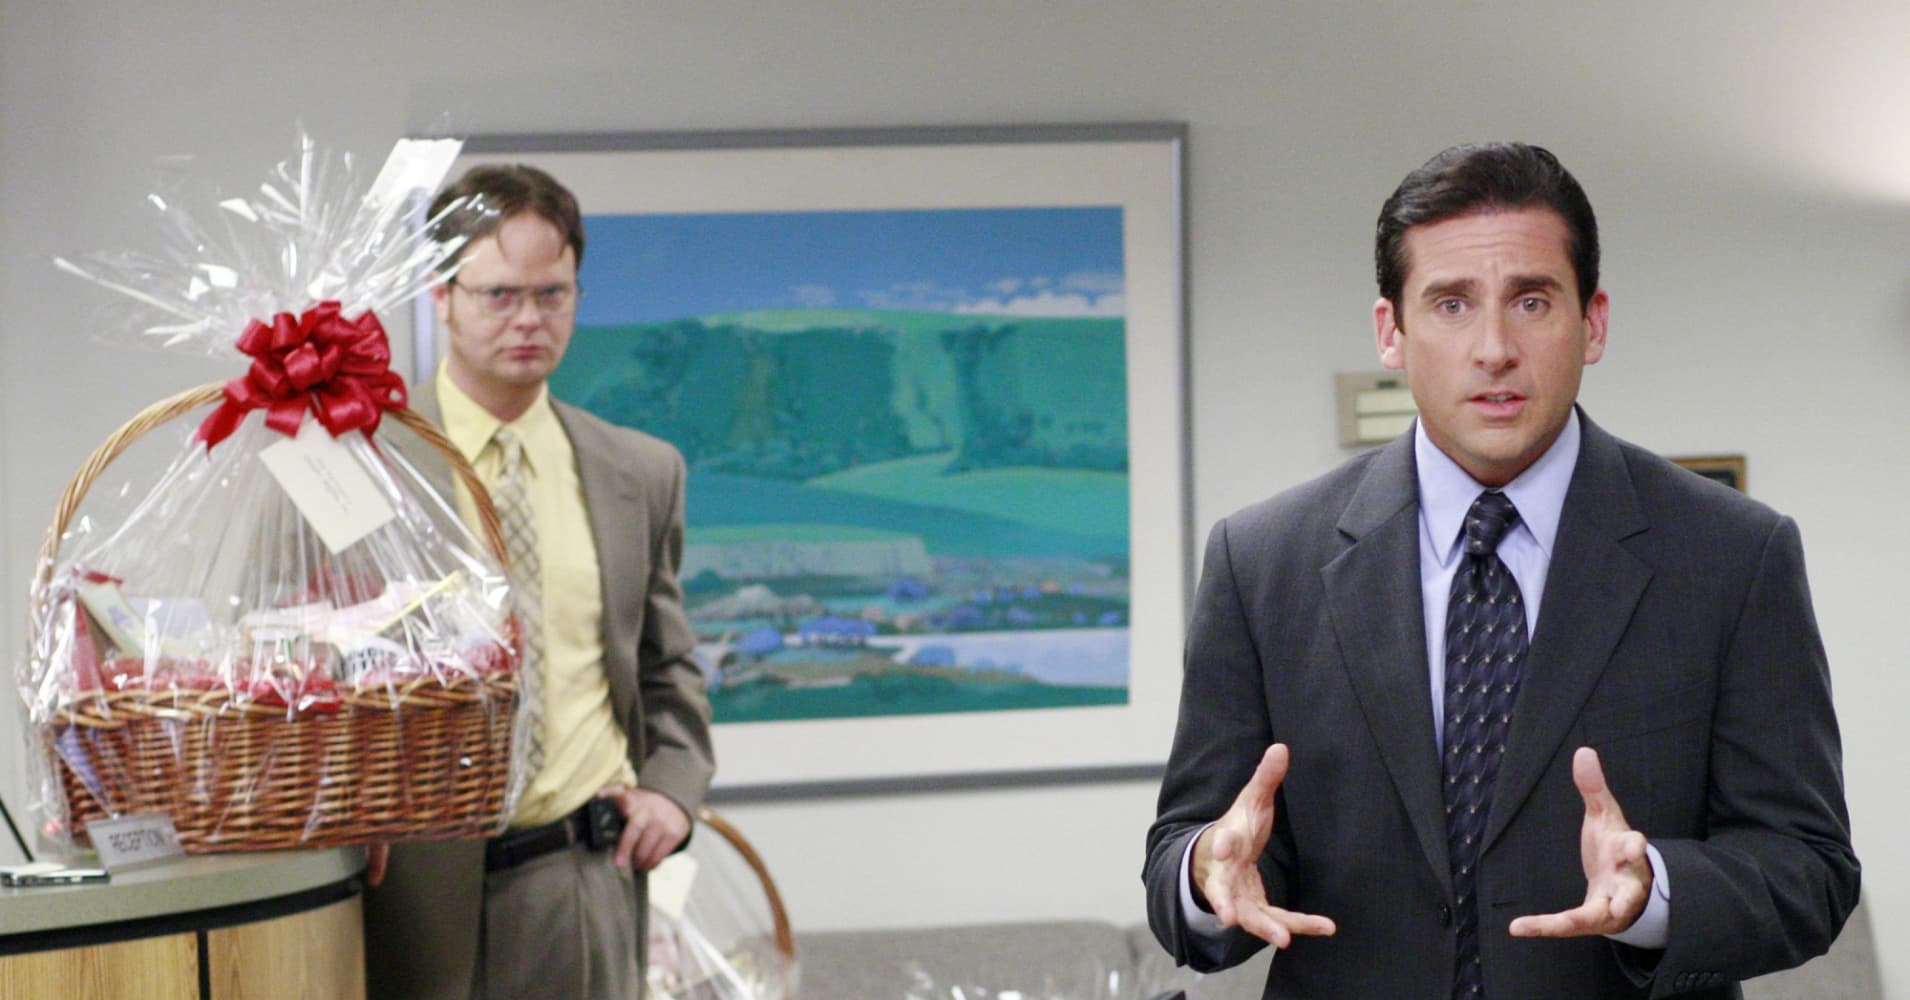 Rainn Wilson as Dwight Schrute and Steve Carell as Michael Scott on The Office.